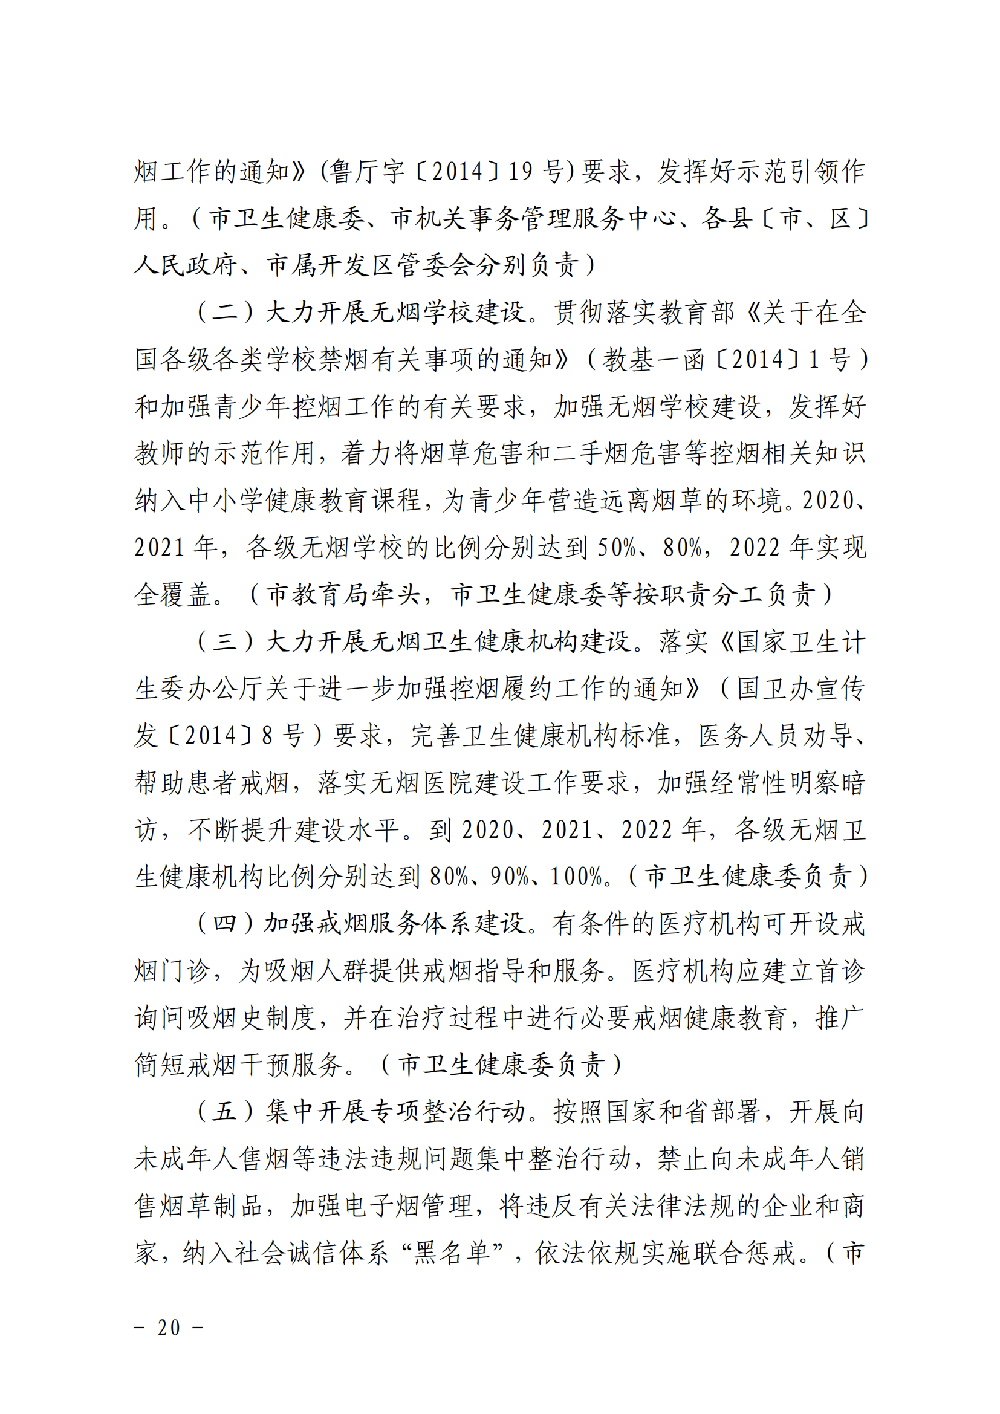 附件3：滨健推委发〔2020〕1号关于印发《健康滨州行动（2020-2022年）》的通知（印刷稿）_19.png